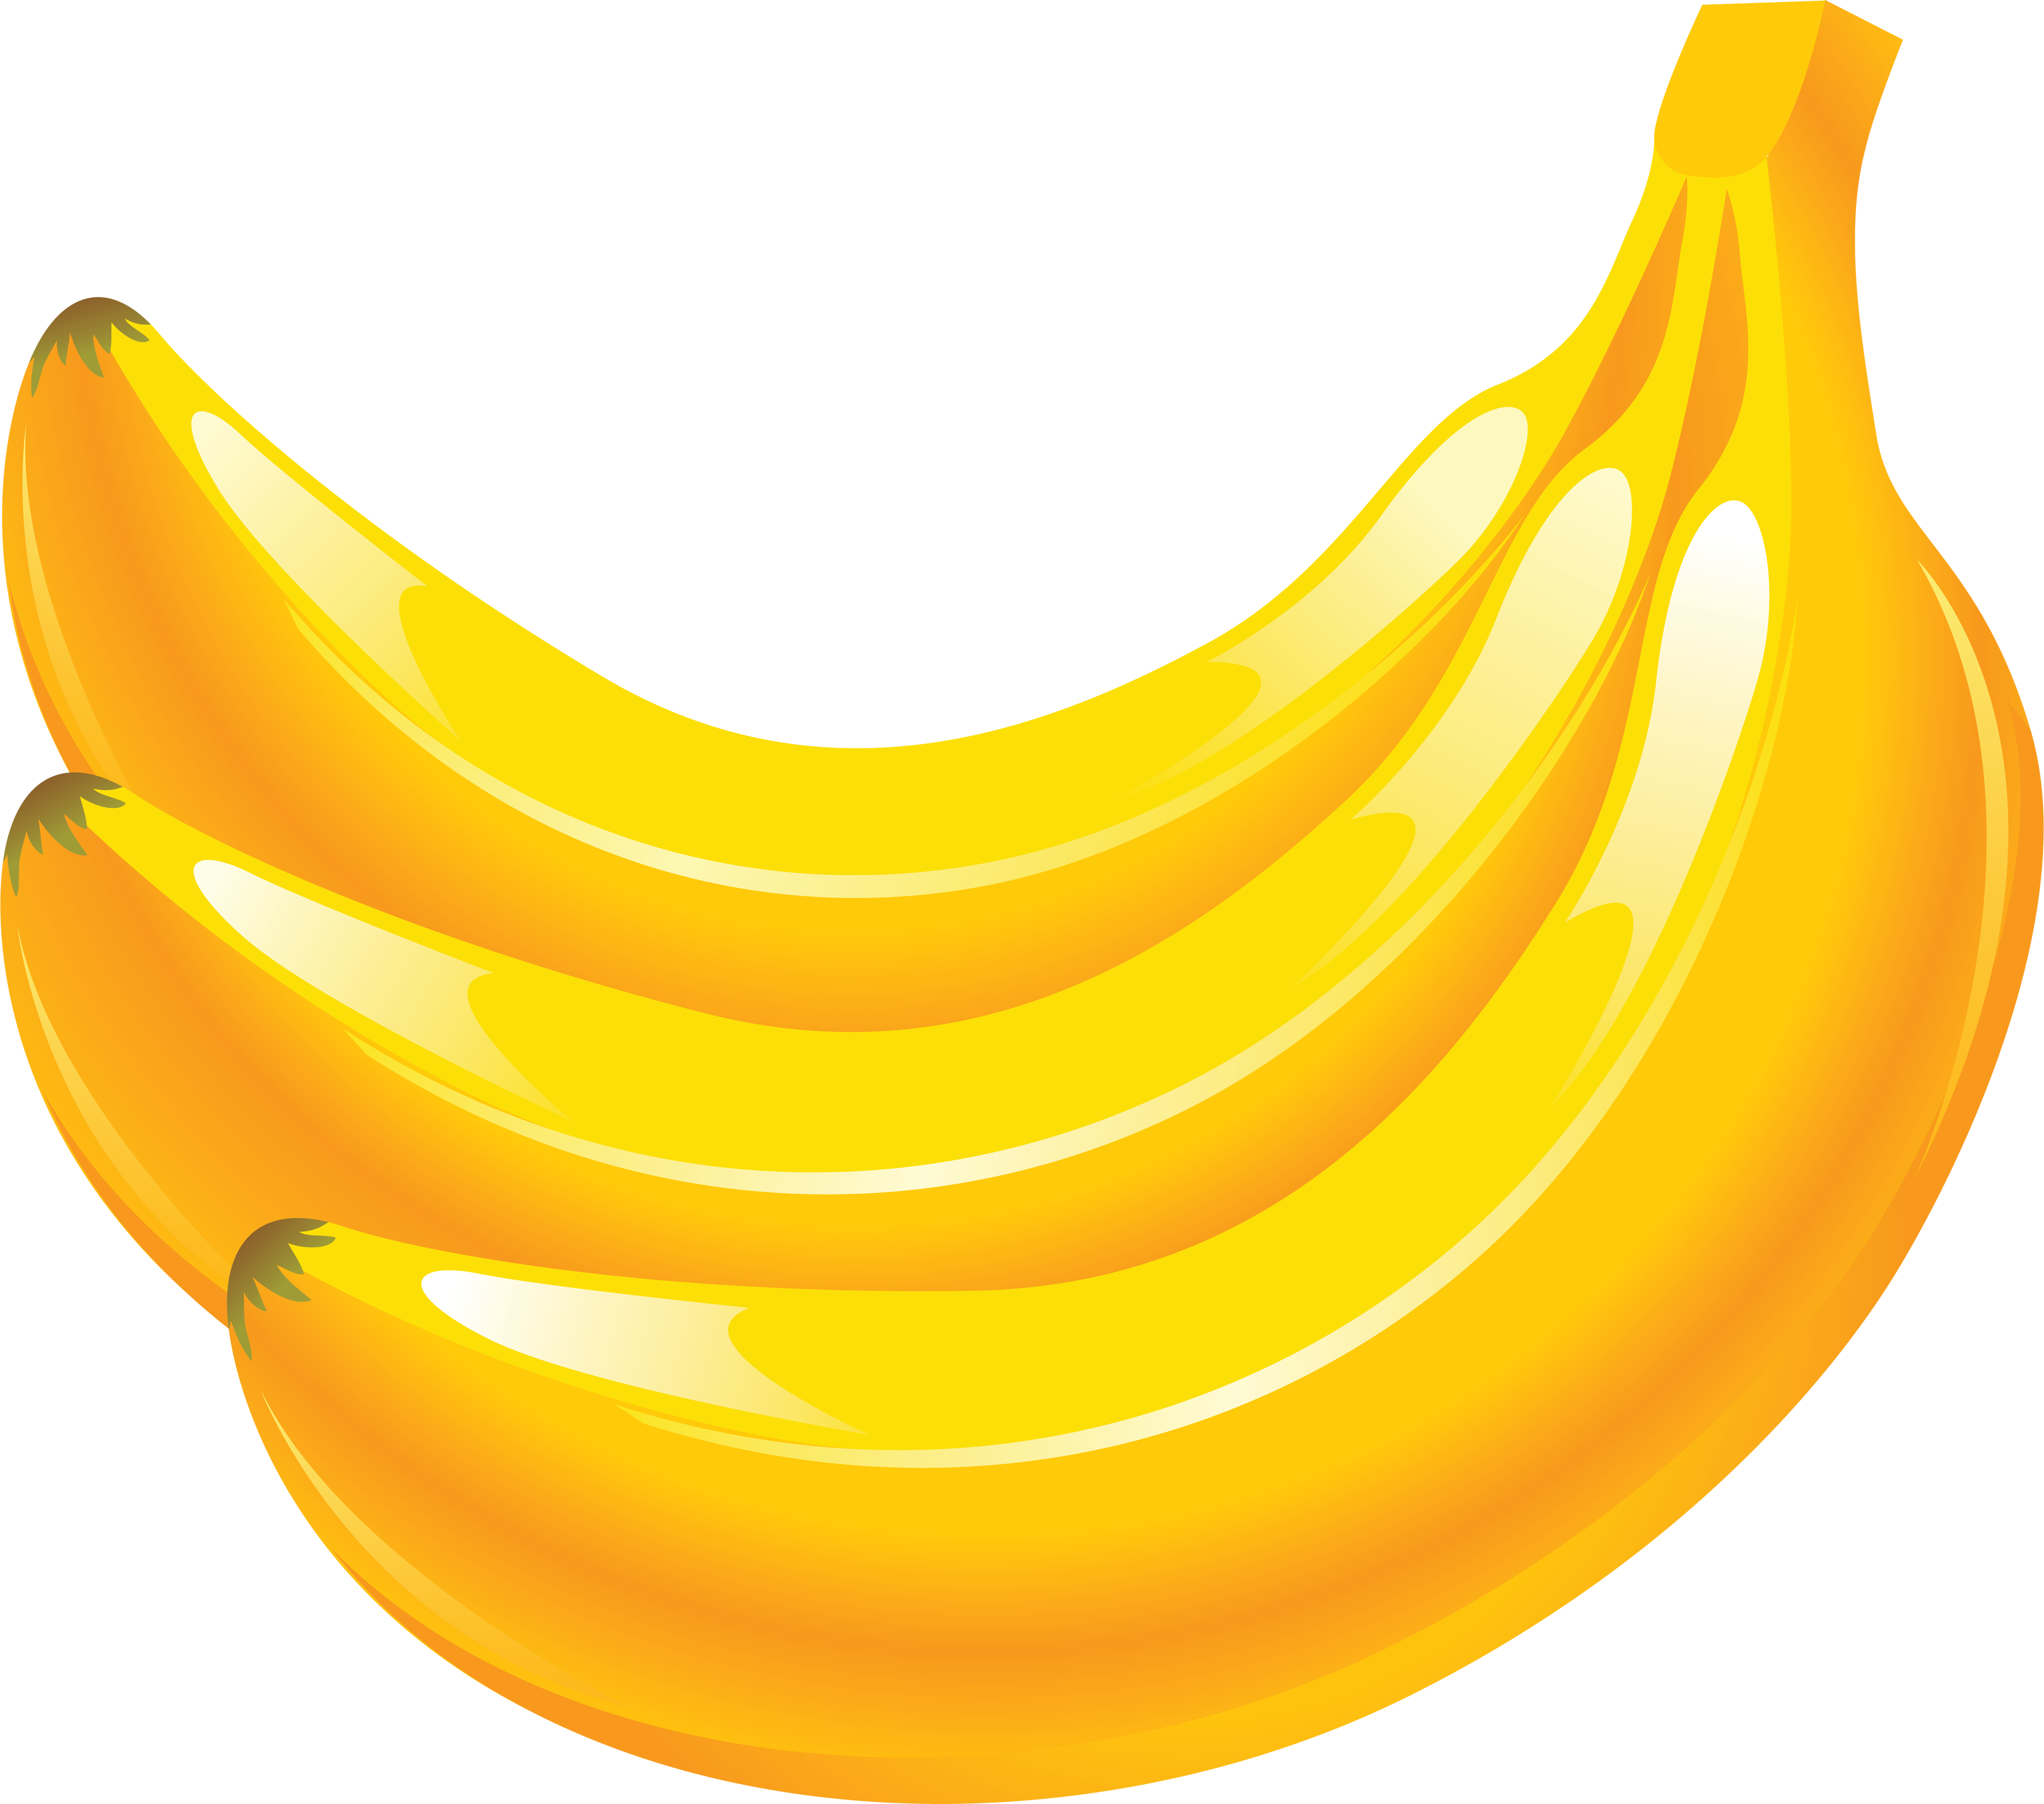 Trzy żółte banany